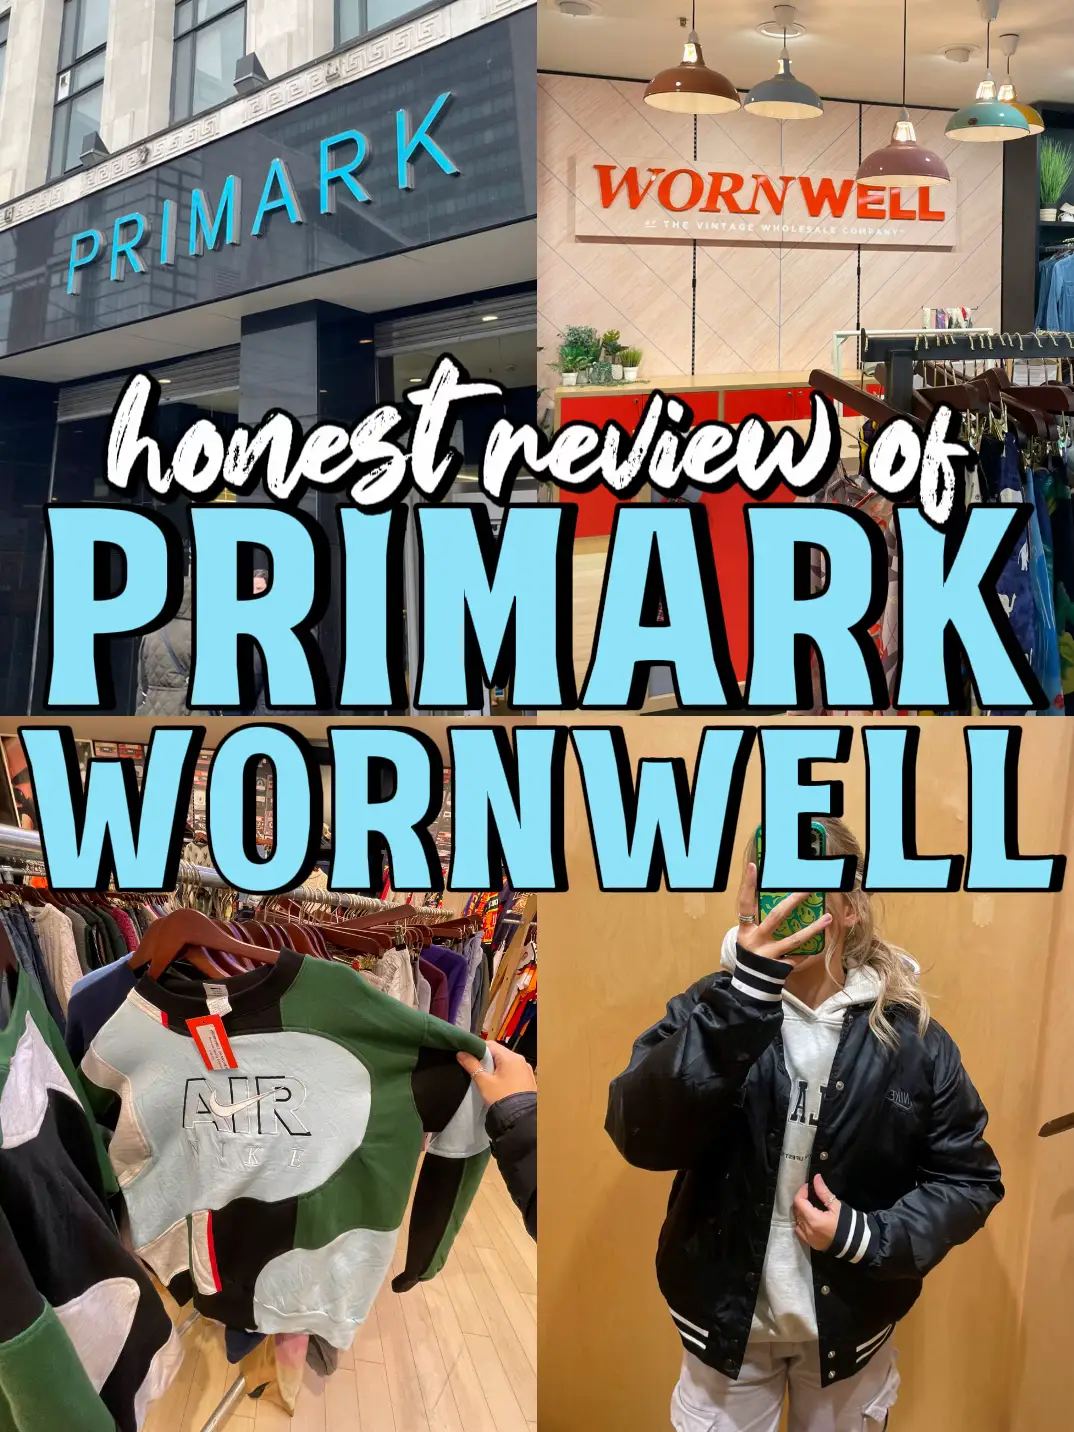 Primark velvet plush leggings review 🤭🤭 these were definitely weara